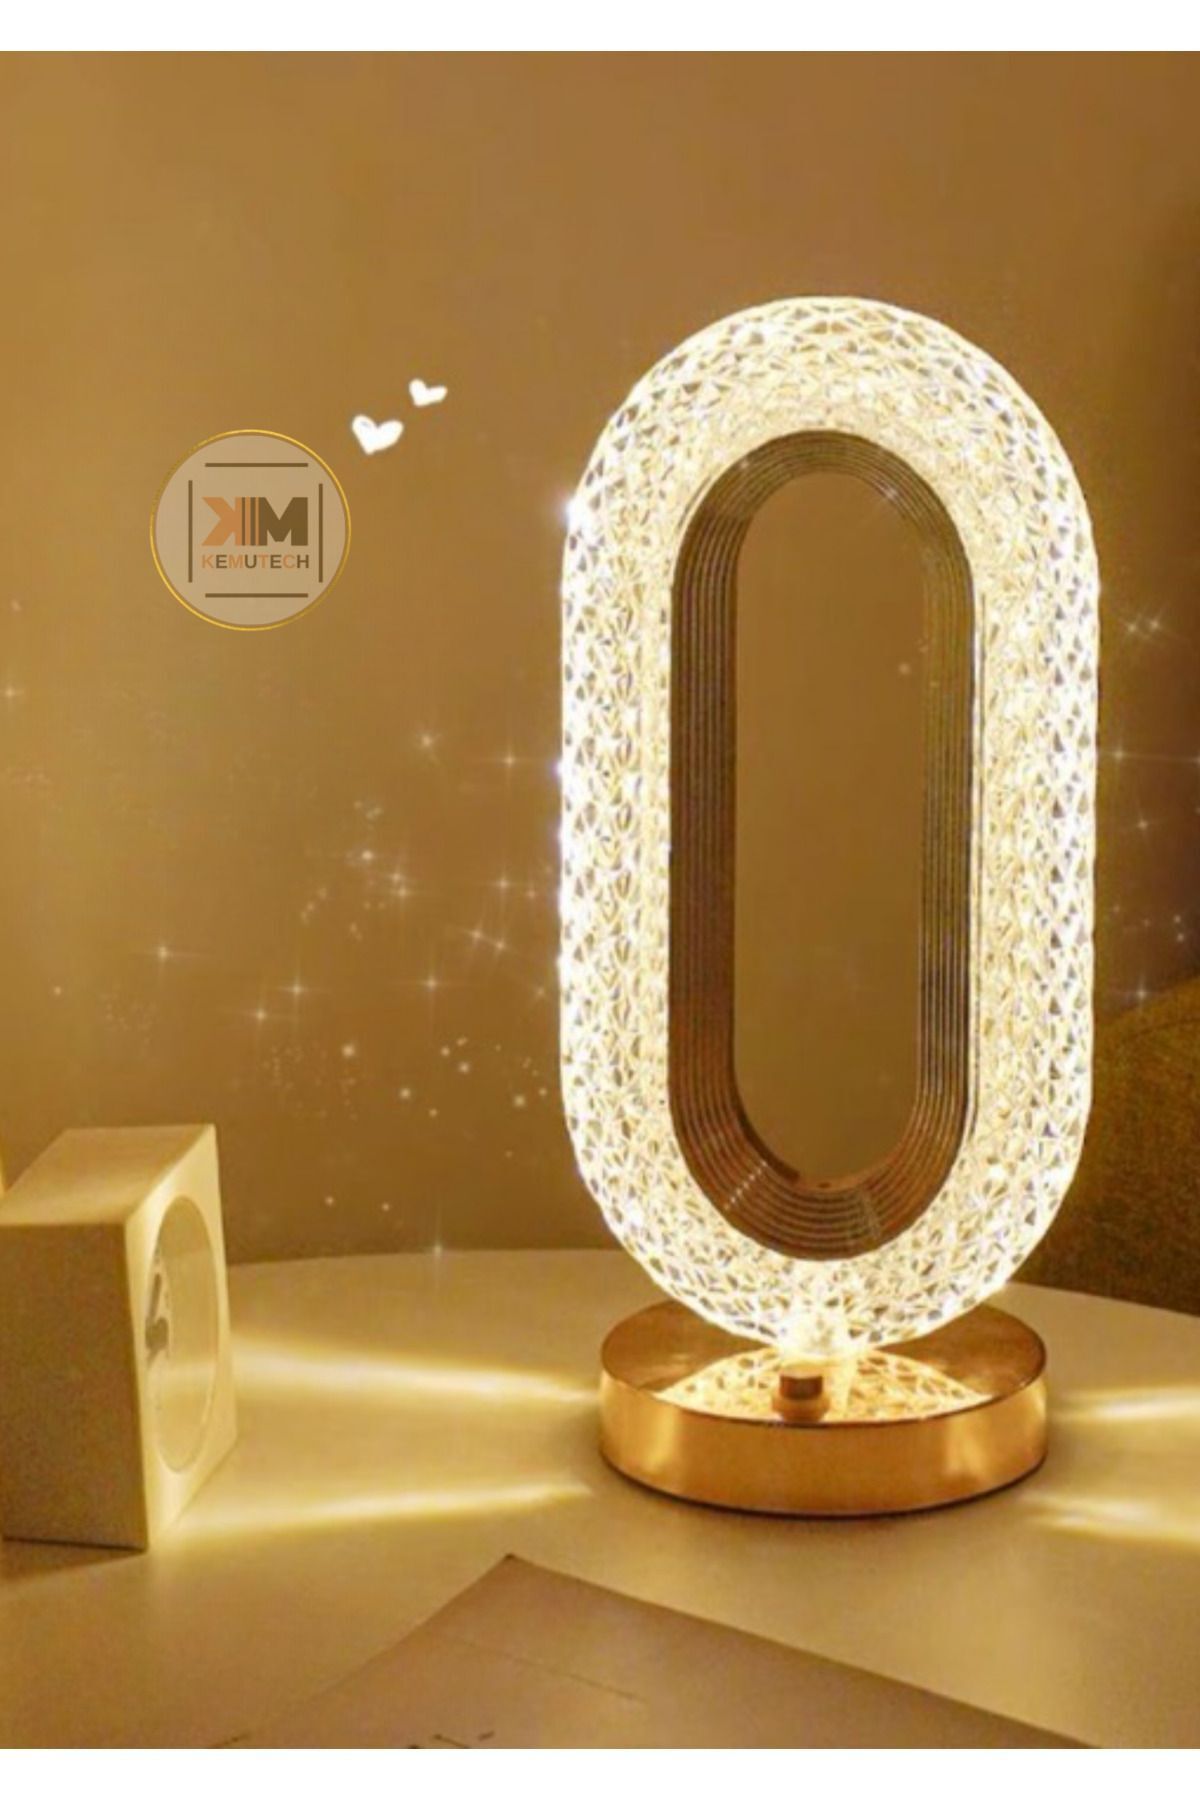 BEKAZE Dekoratif Kristal Şarjlı Yılbaşı Masa Lambası, Gold Led Abajur, Dokunmatik 3 Renk Modu